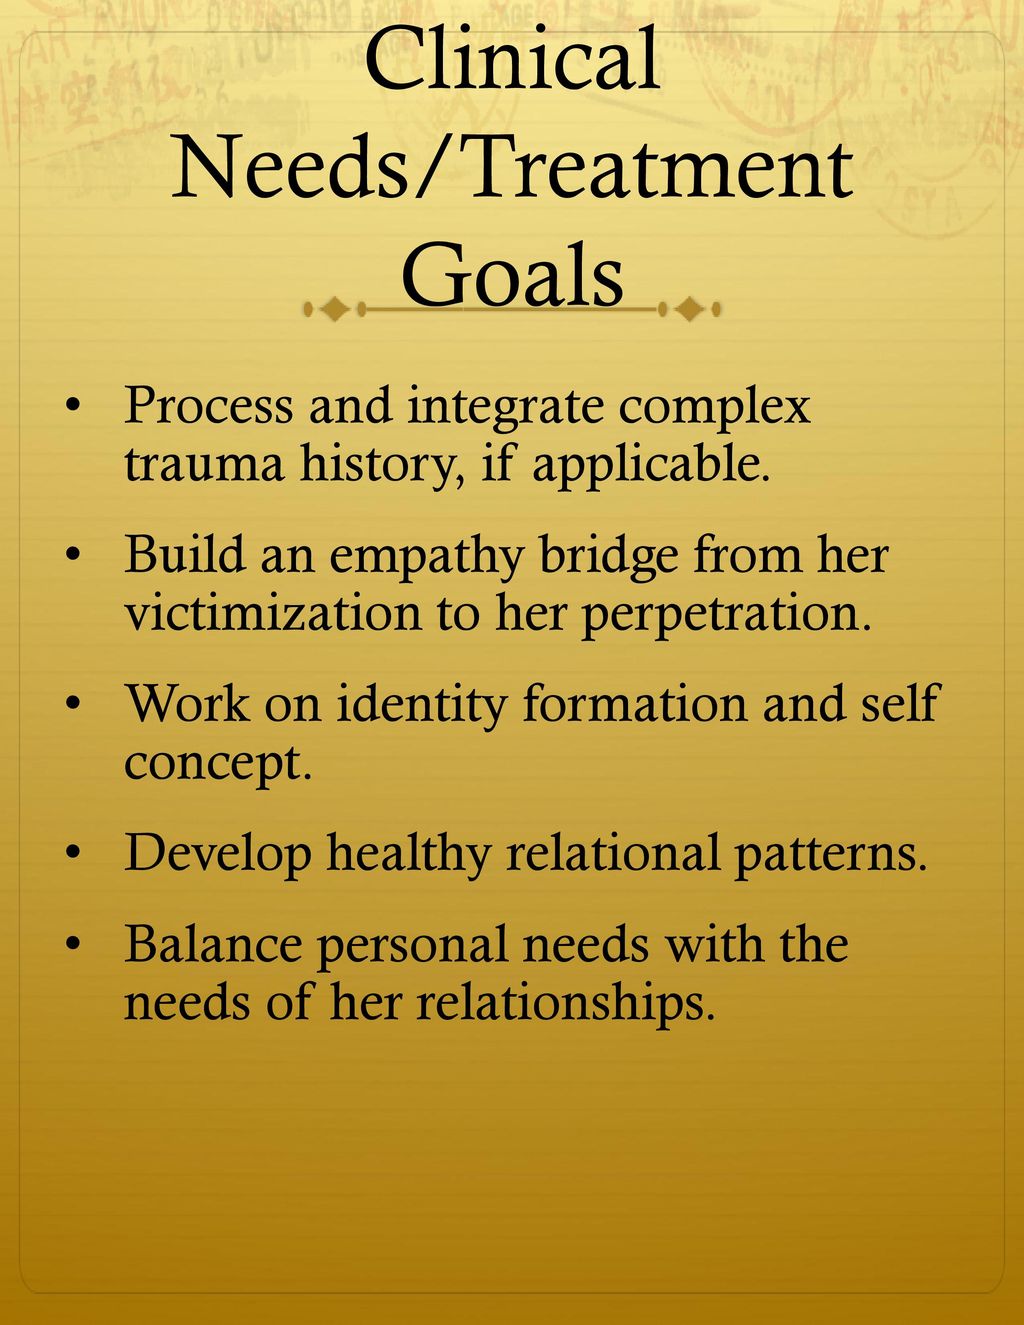 Clinical Needs/Treatment Goals